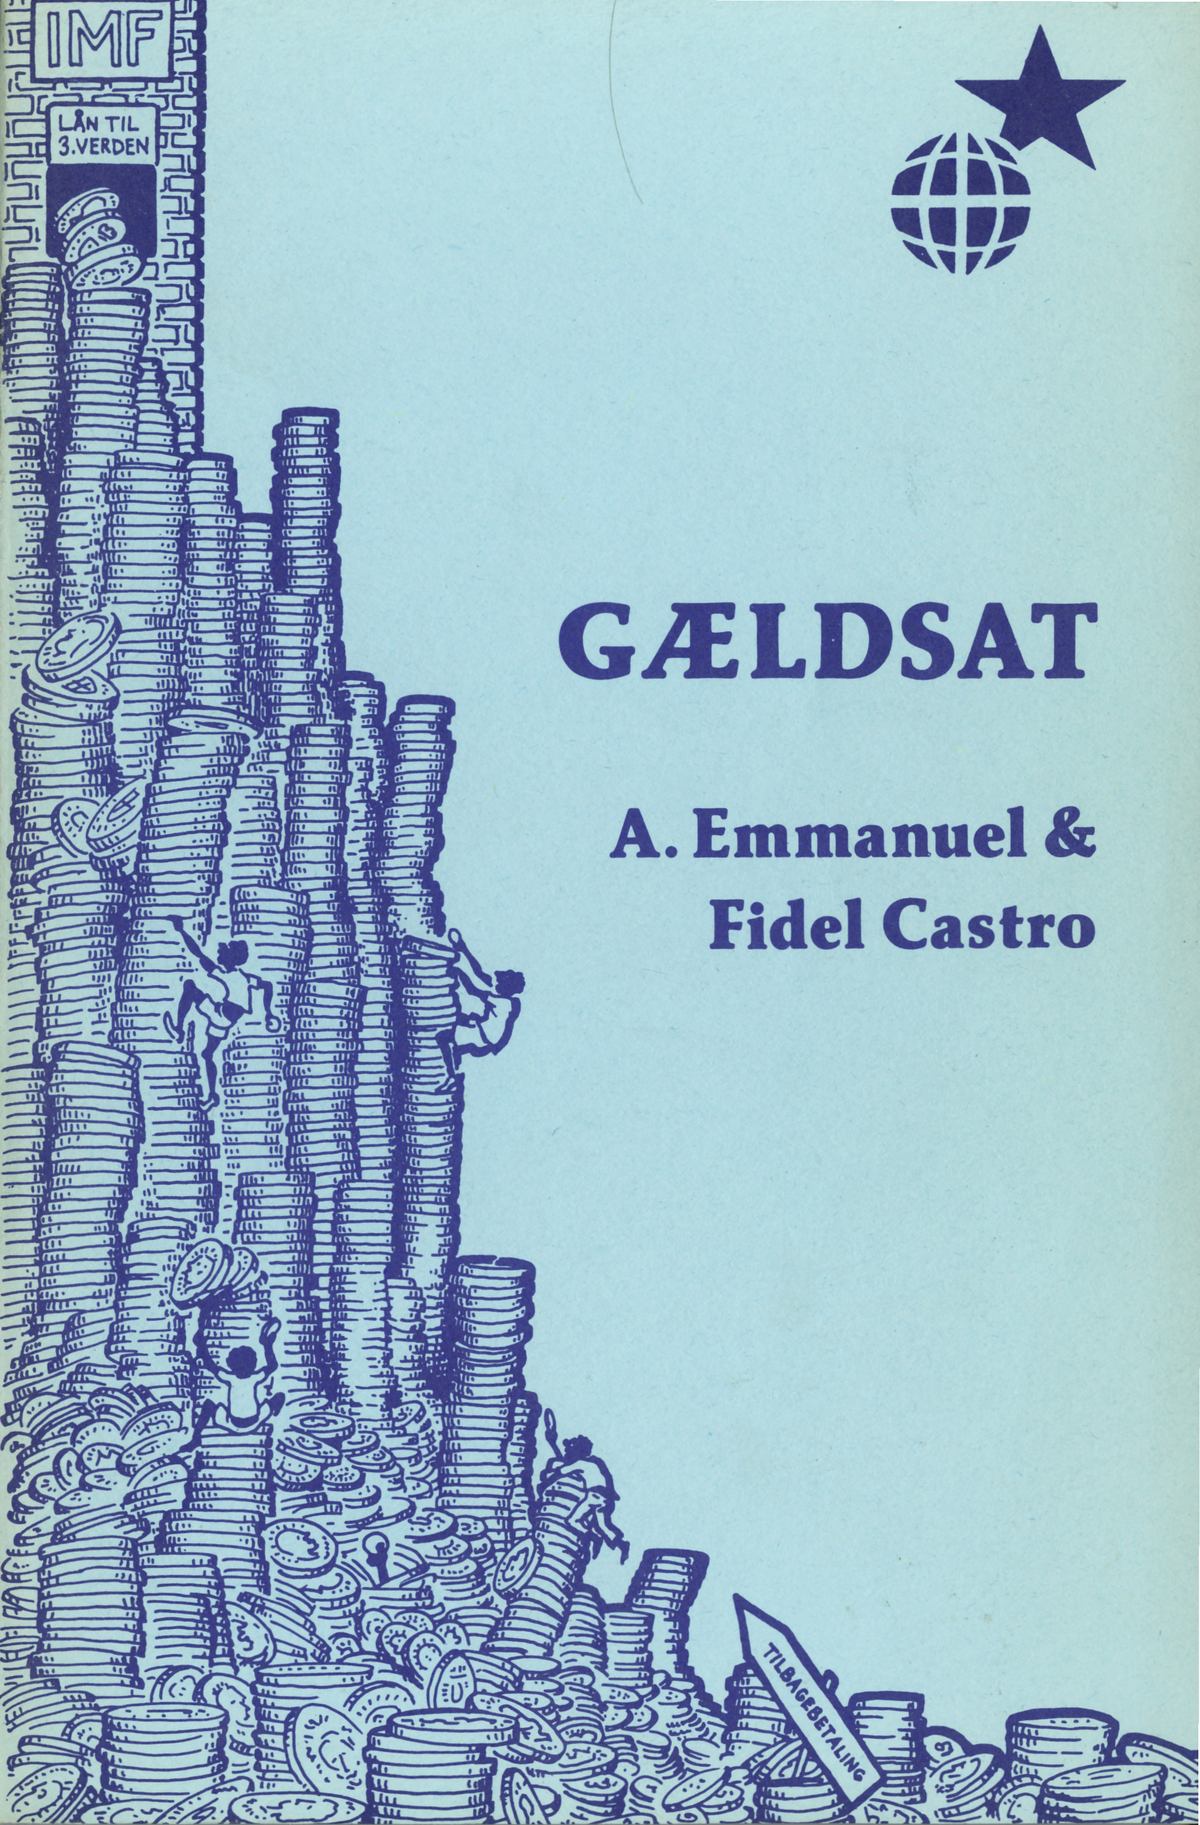 Forside på bogen Gældsat.